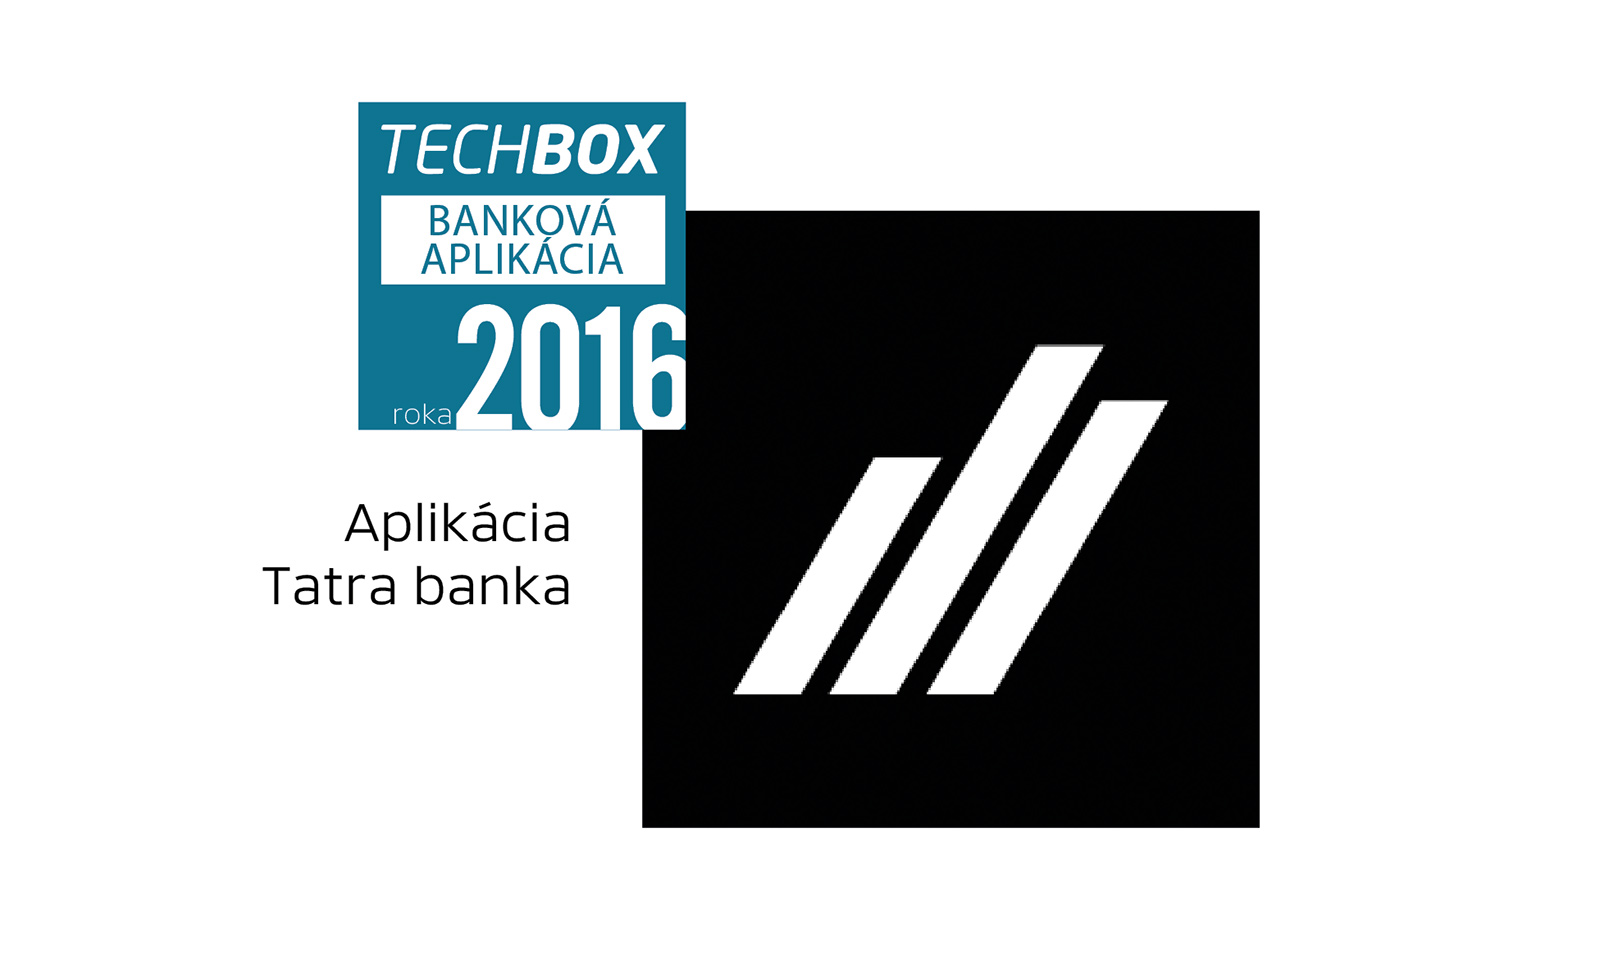 Techbox banková aplikácia 2016